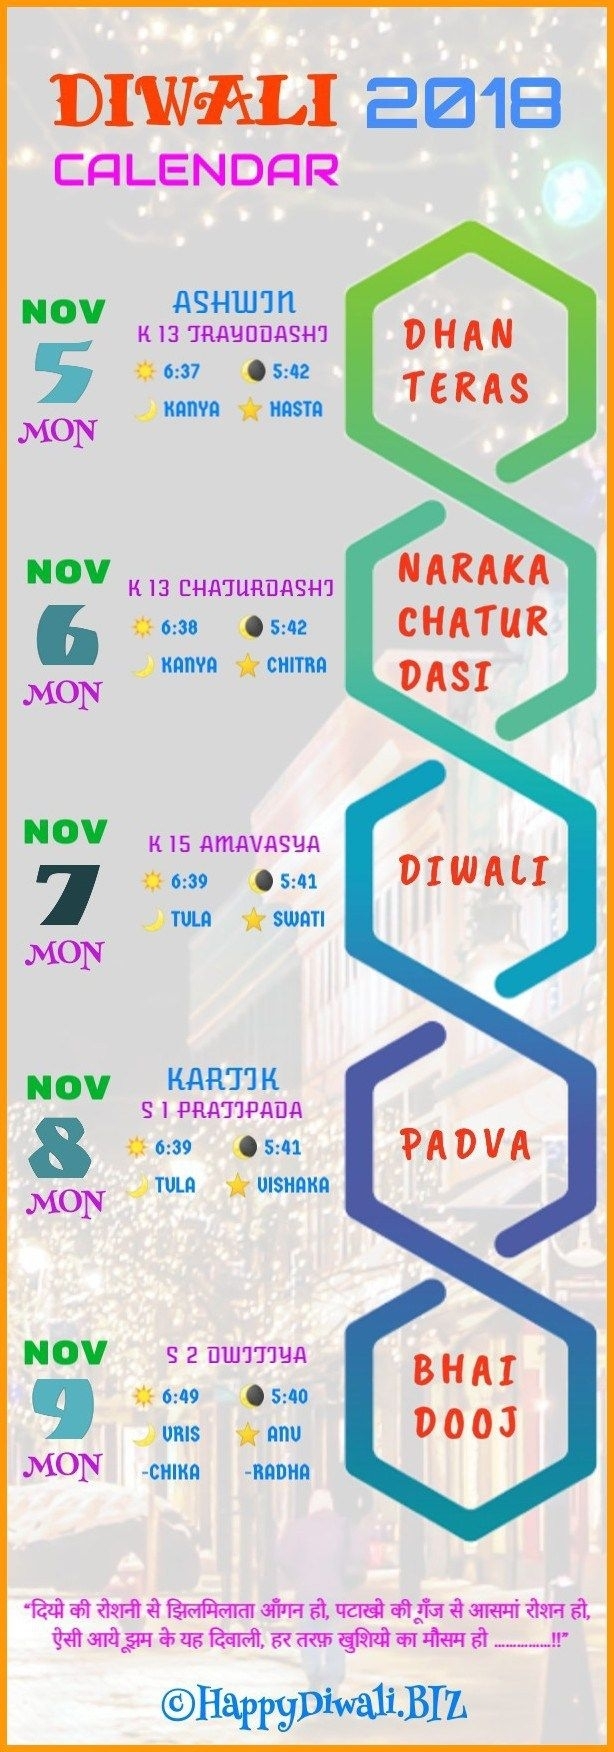 Get Diwali 2018 Date In Calendar